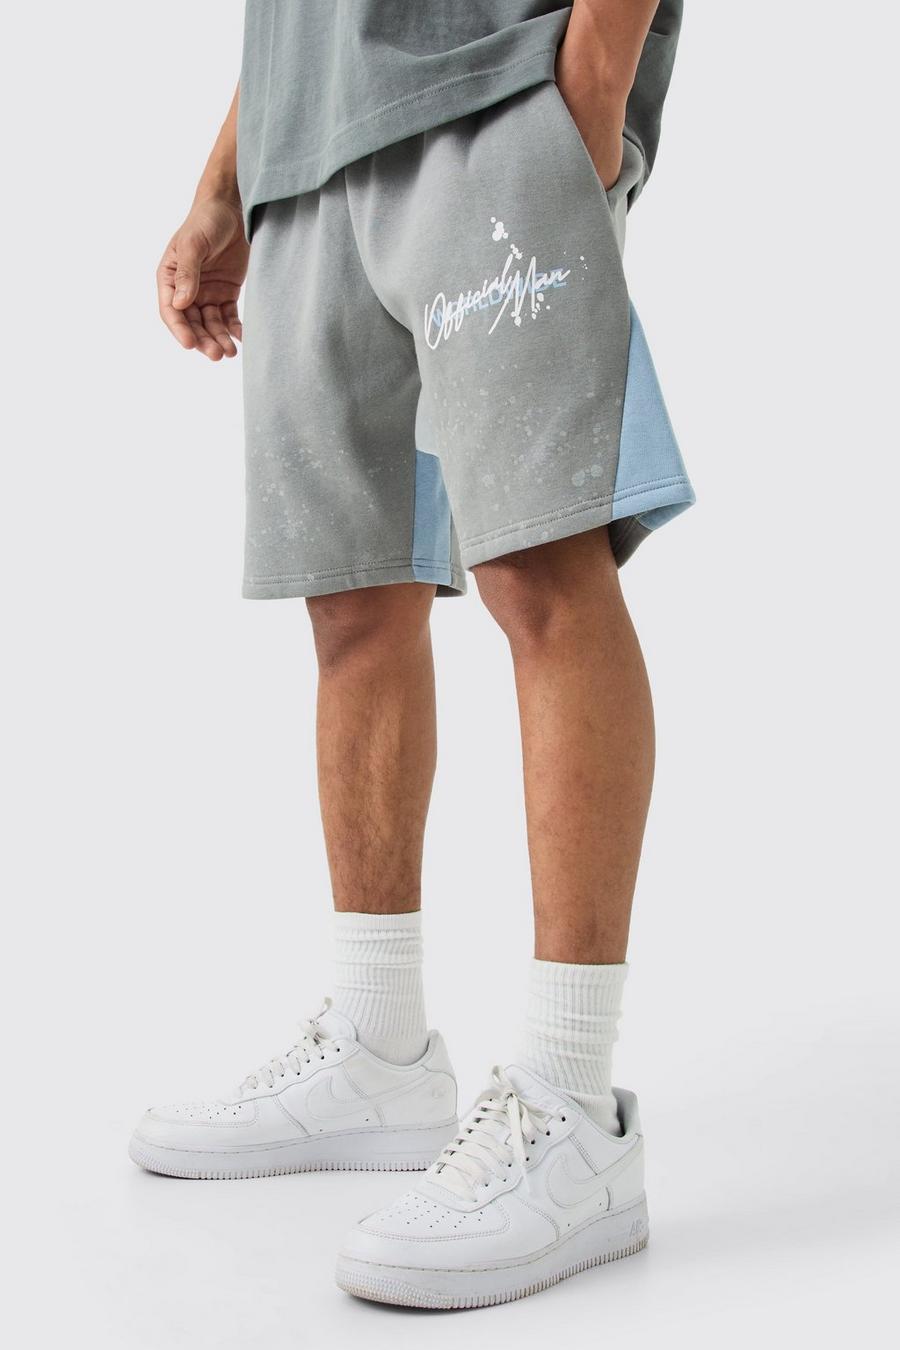 Lockere Shorts mit Farbspritzern, Grey